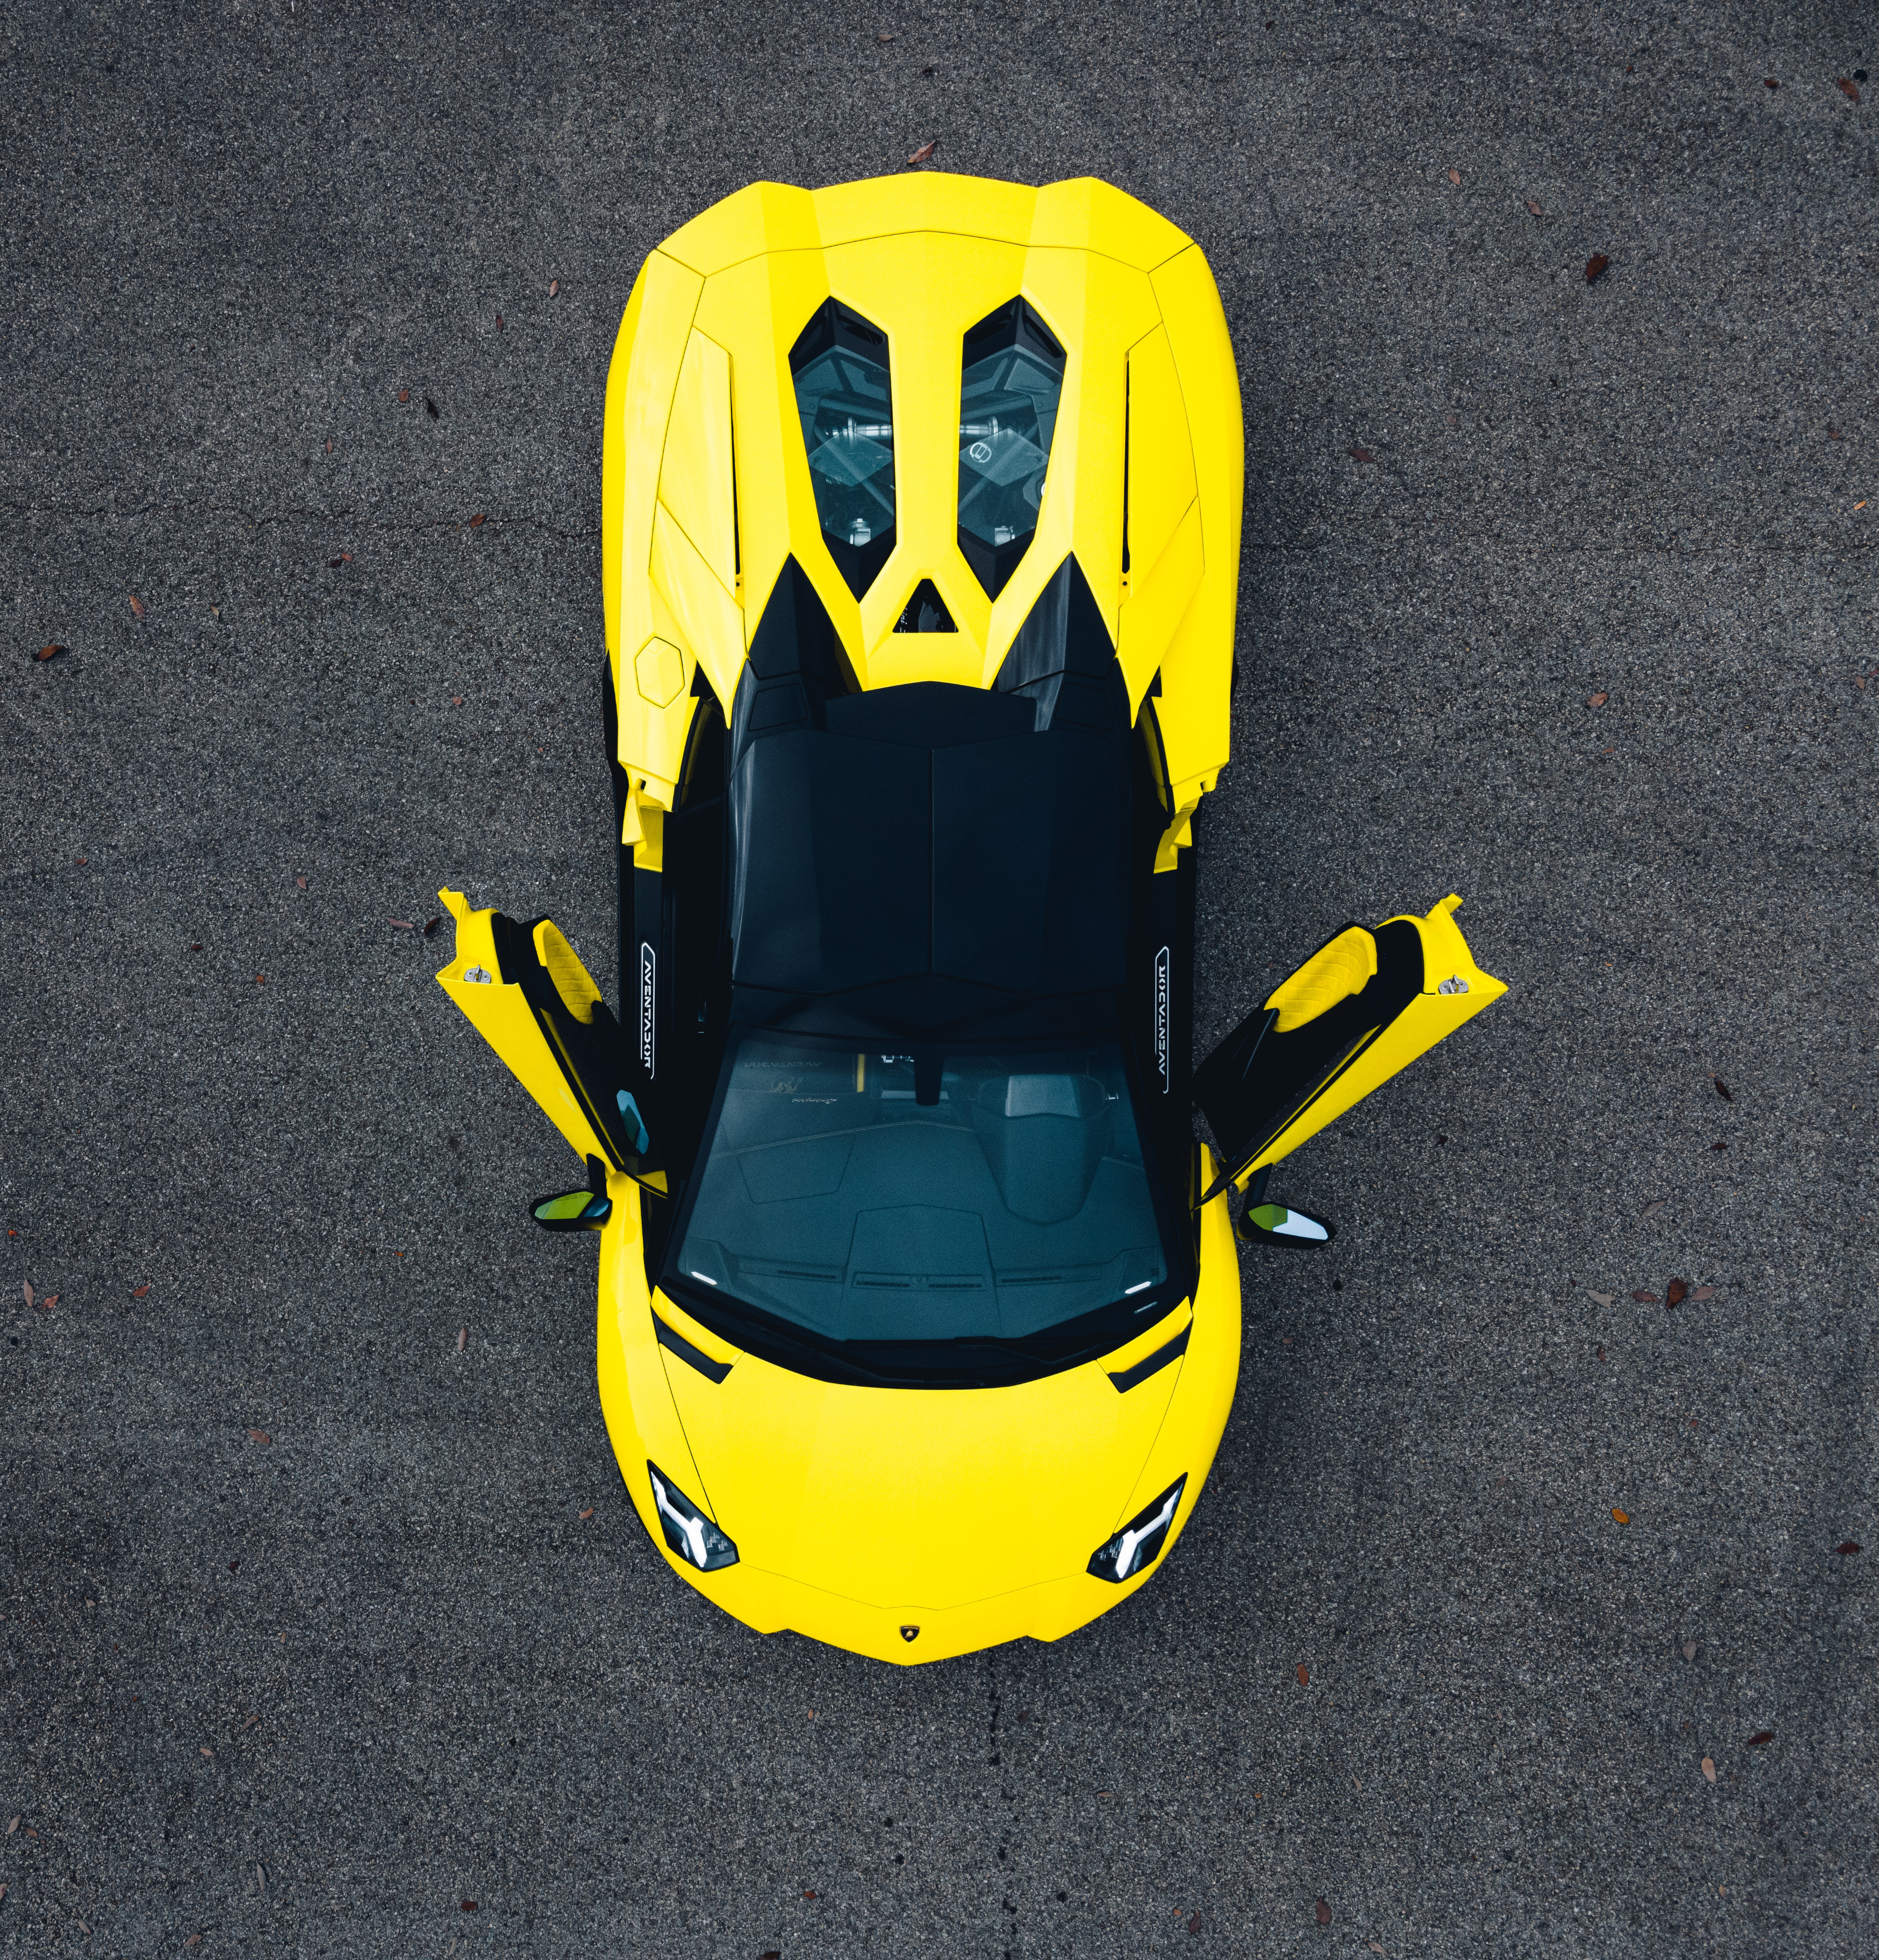 sports car, lamborghini aventador, sports, lamborghini, cars, yellow, view from above, car